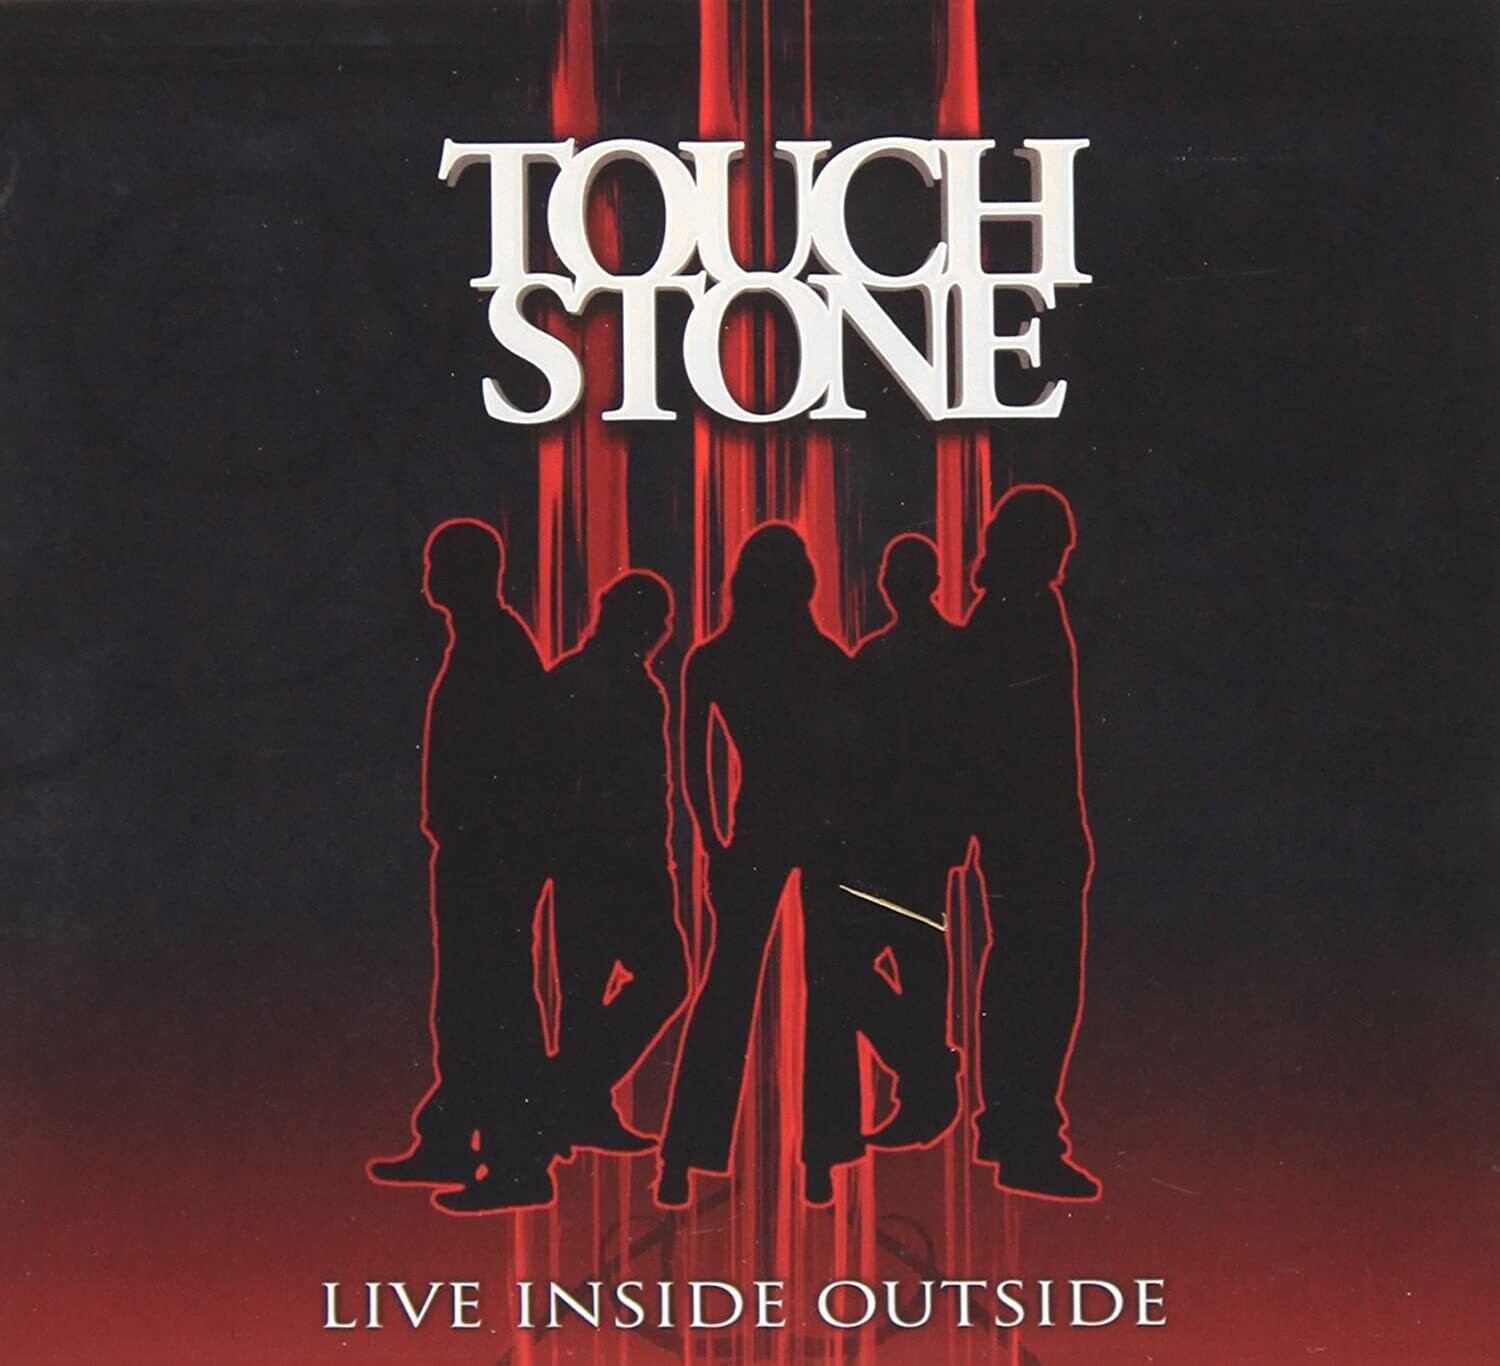 Touchstone - Live Inside Outside 2DVD/CD